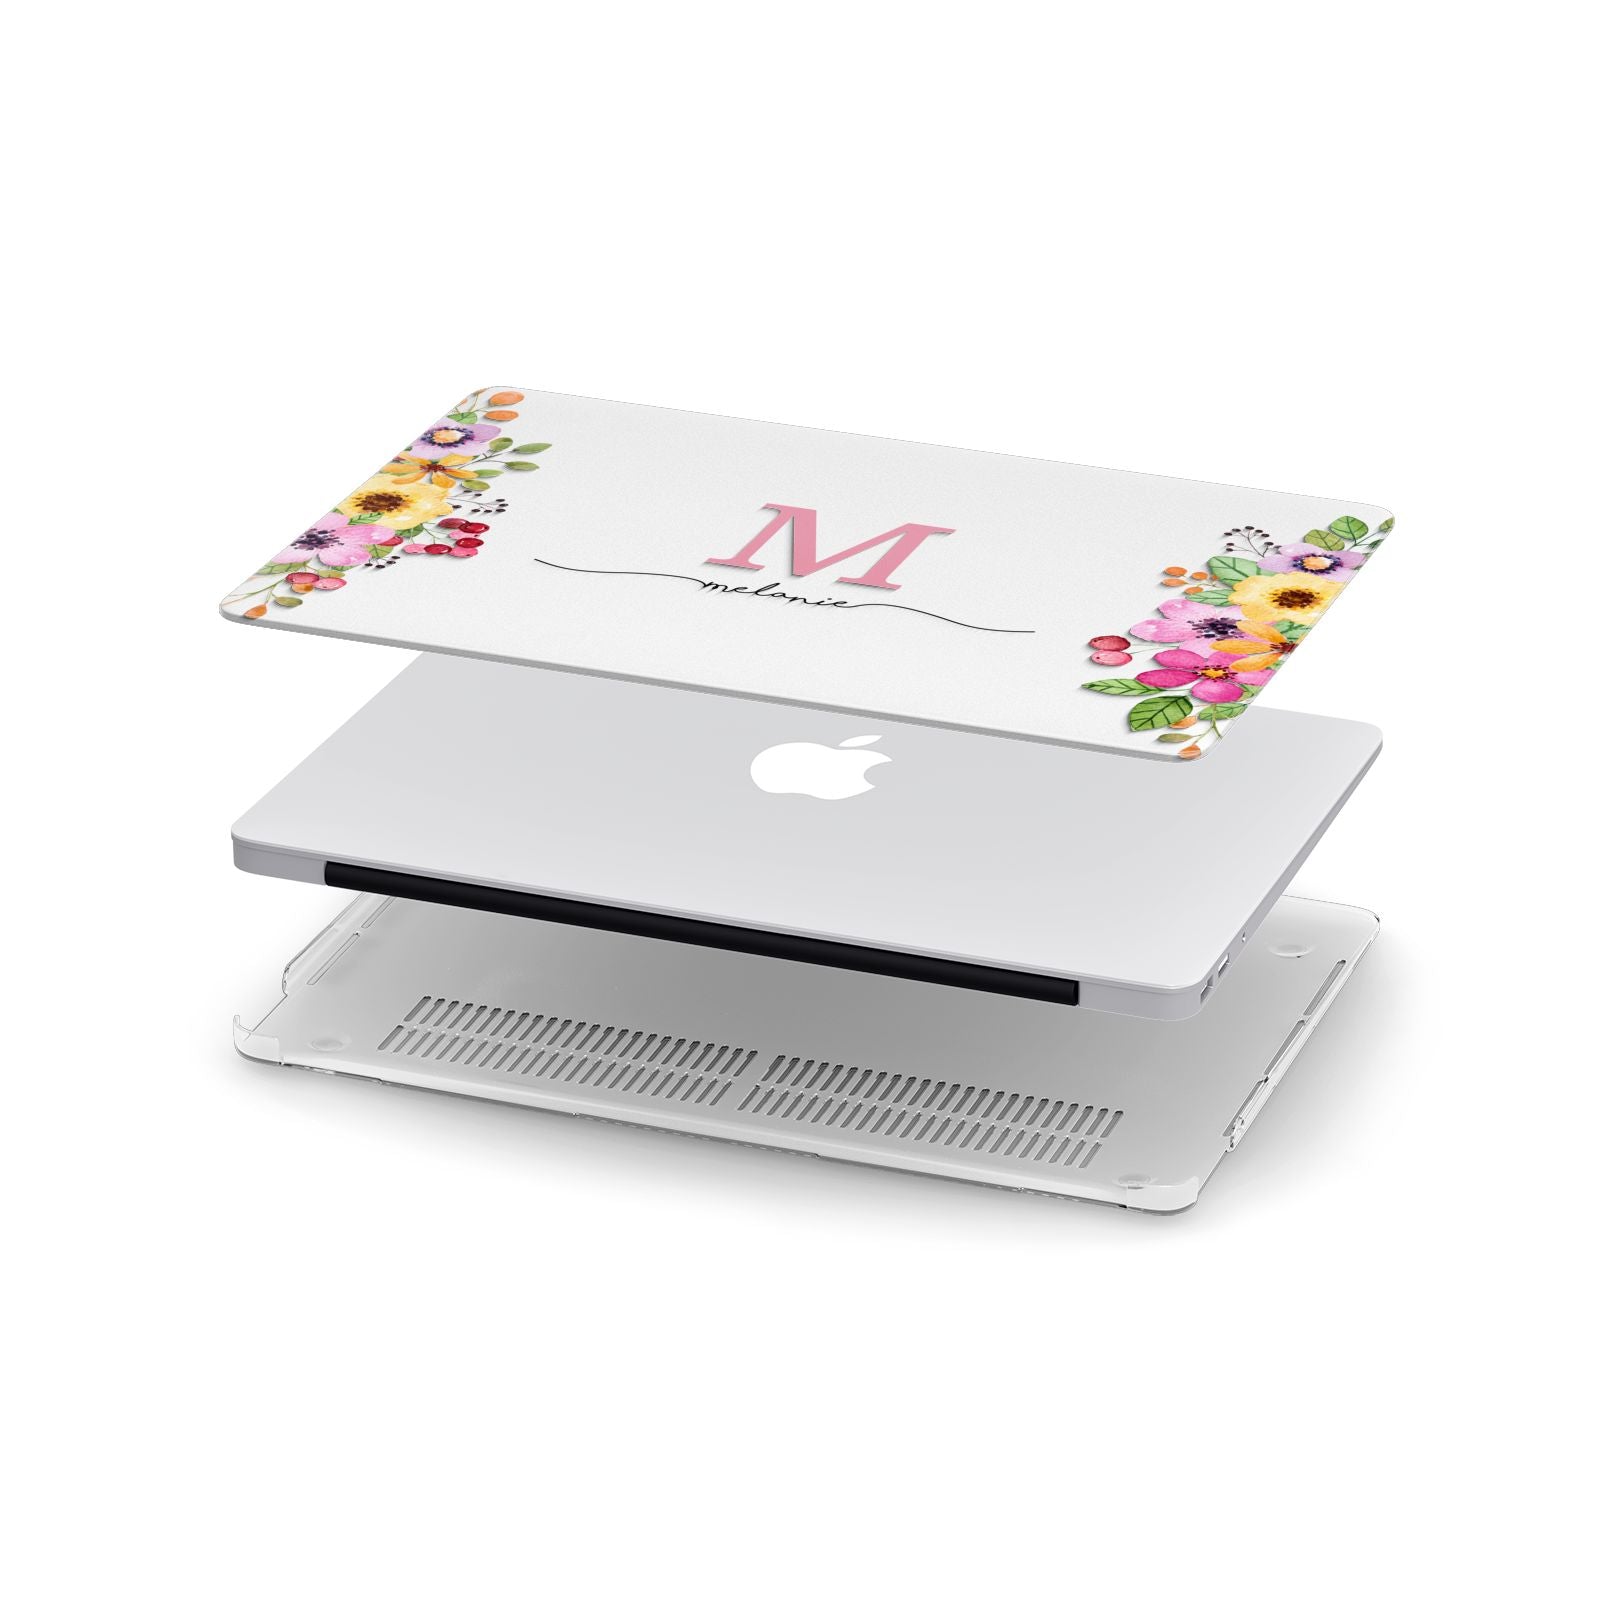 Personalised Summer Flowers Apple MacBook Case in Detail